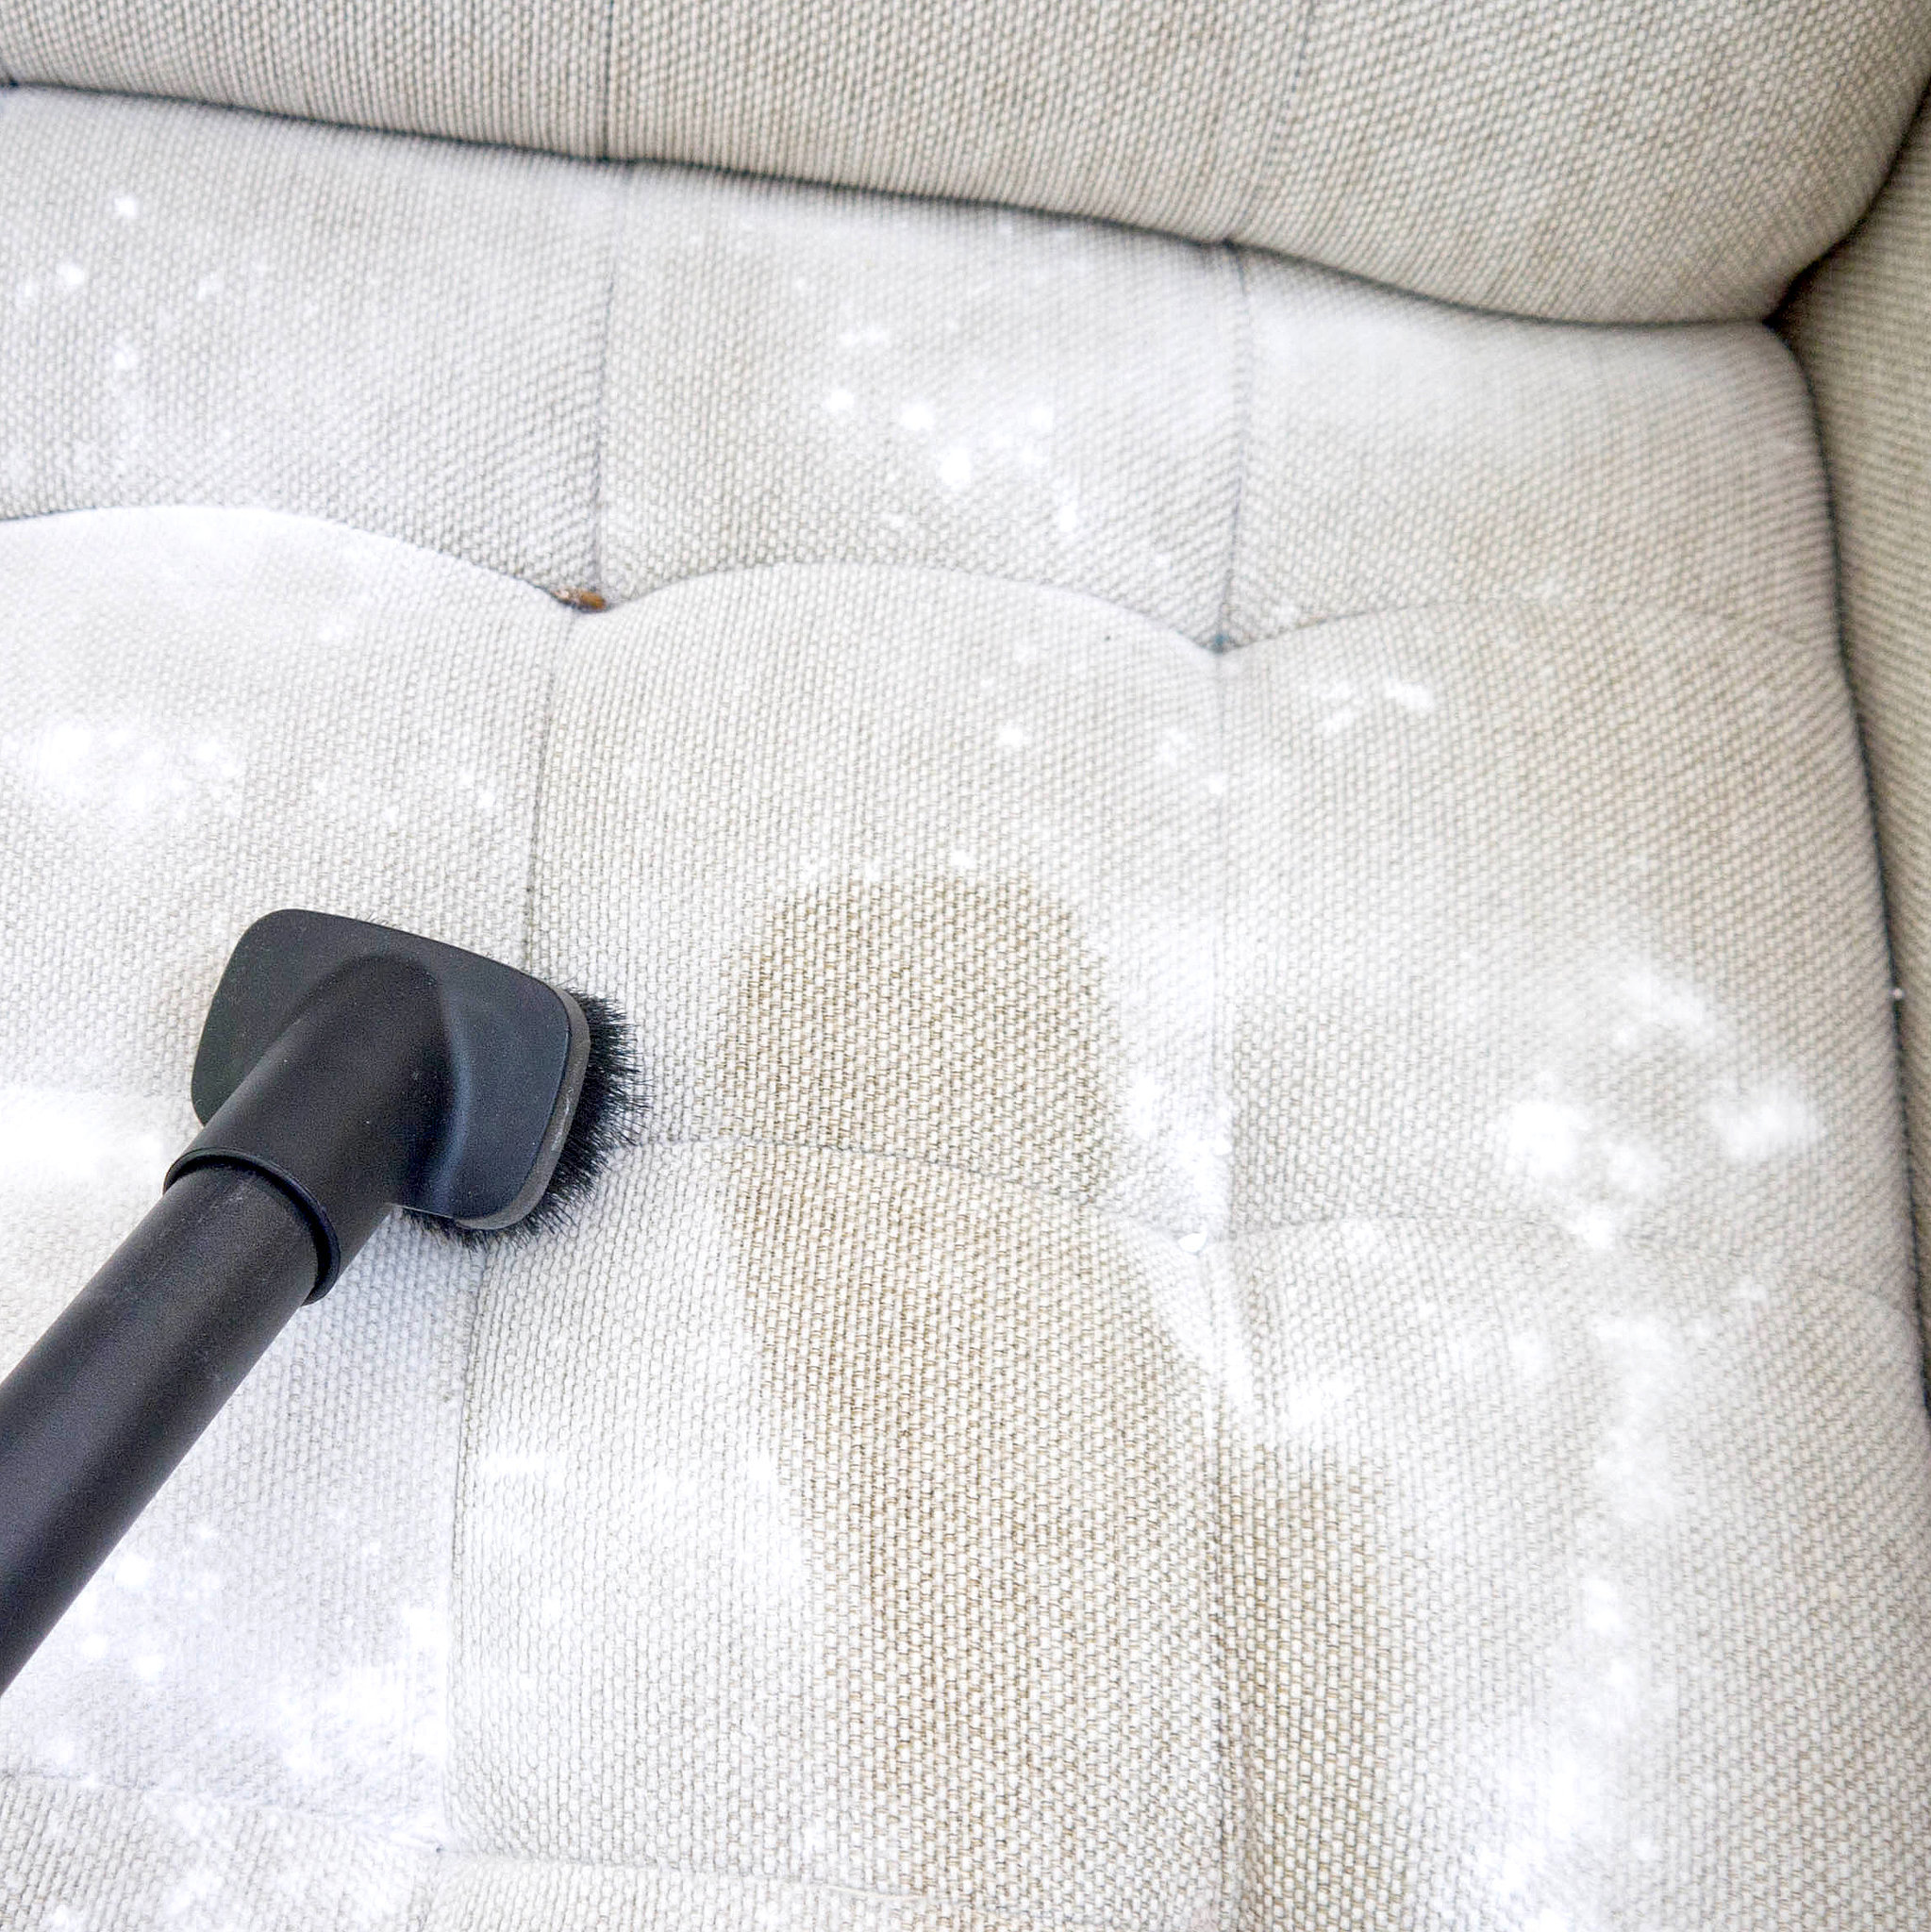 Utænkelig Plante træer mistænksom How to Clean a Natural-Fabric Couch | POPSUGAR Smart Living